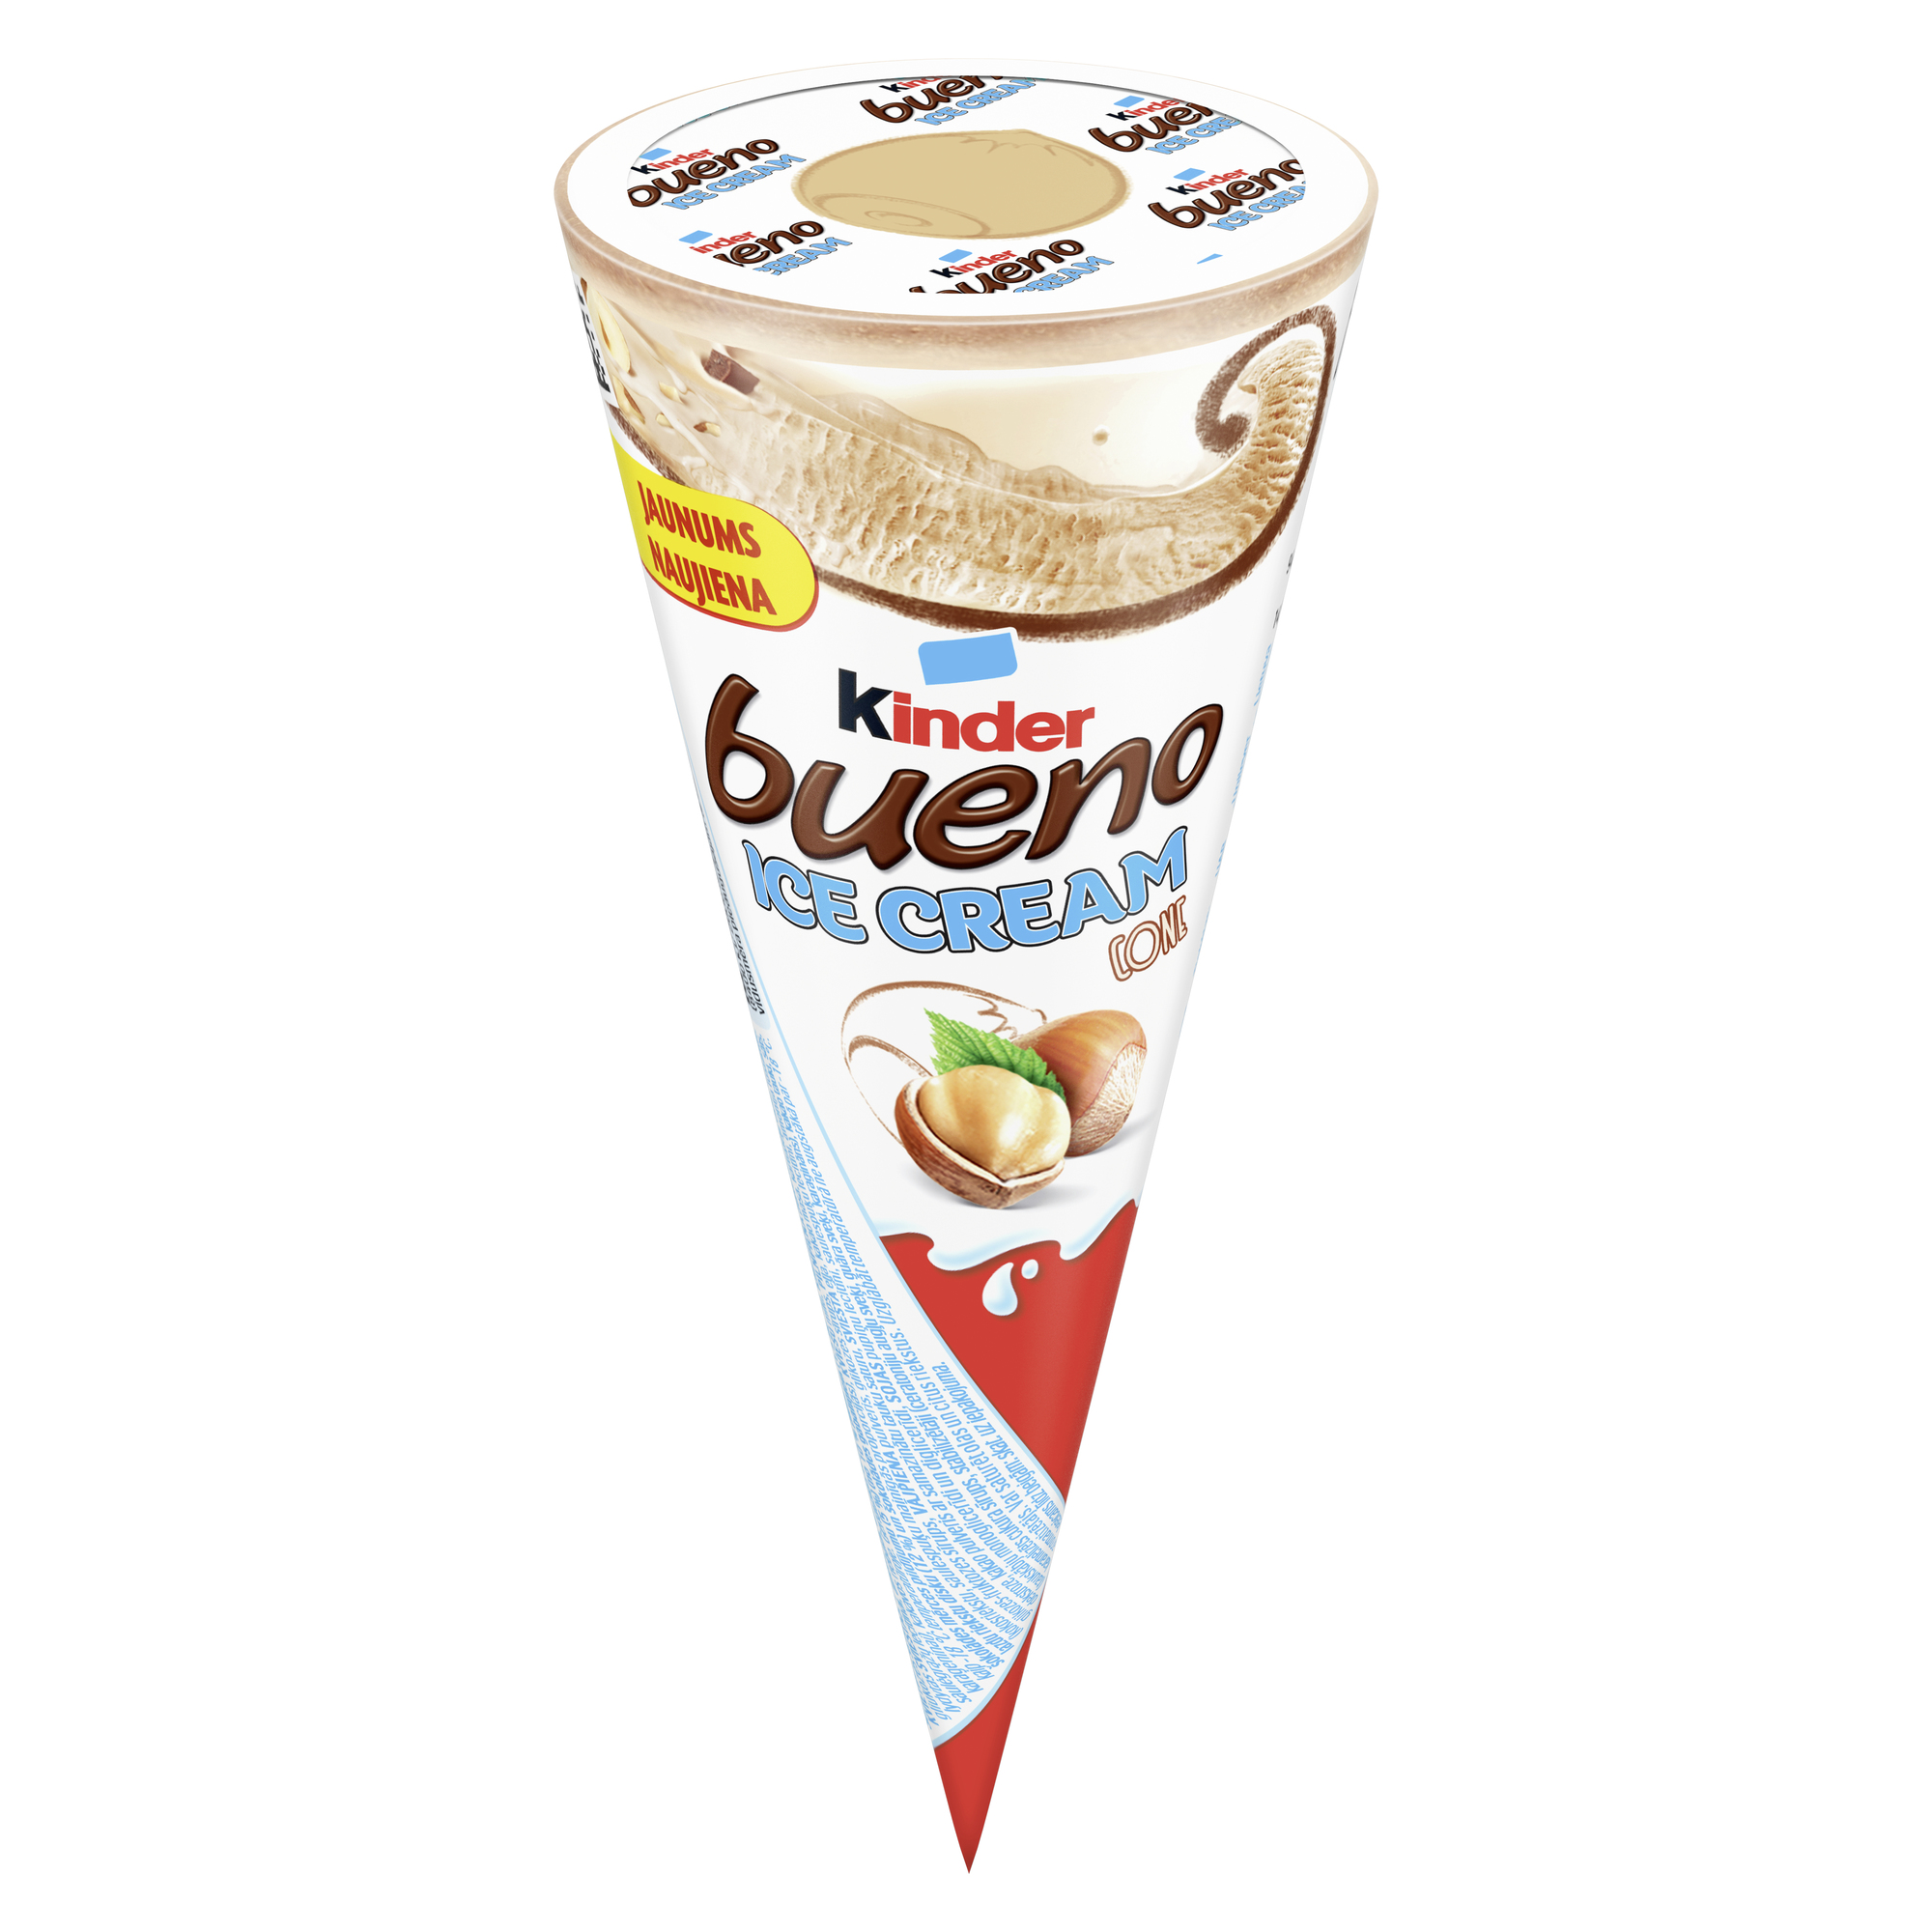 Kinder bueno Ice Cream Cone 90ml